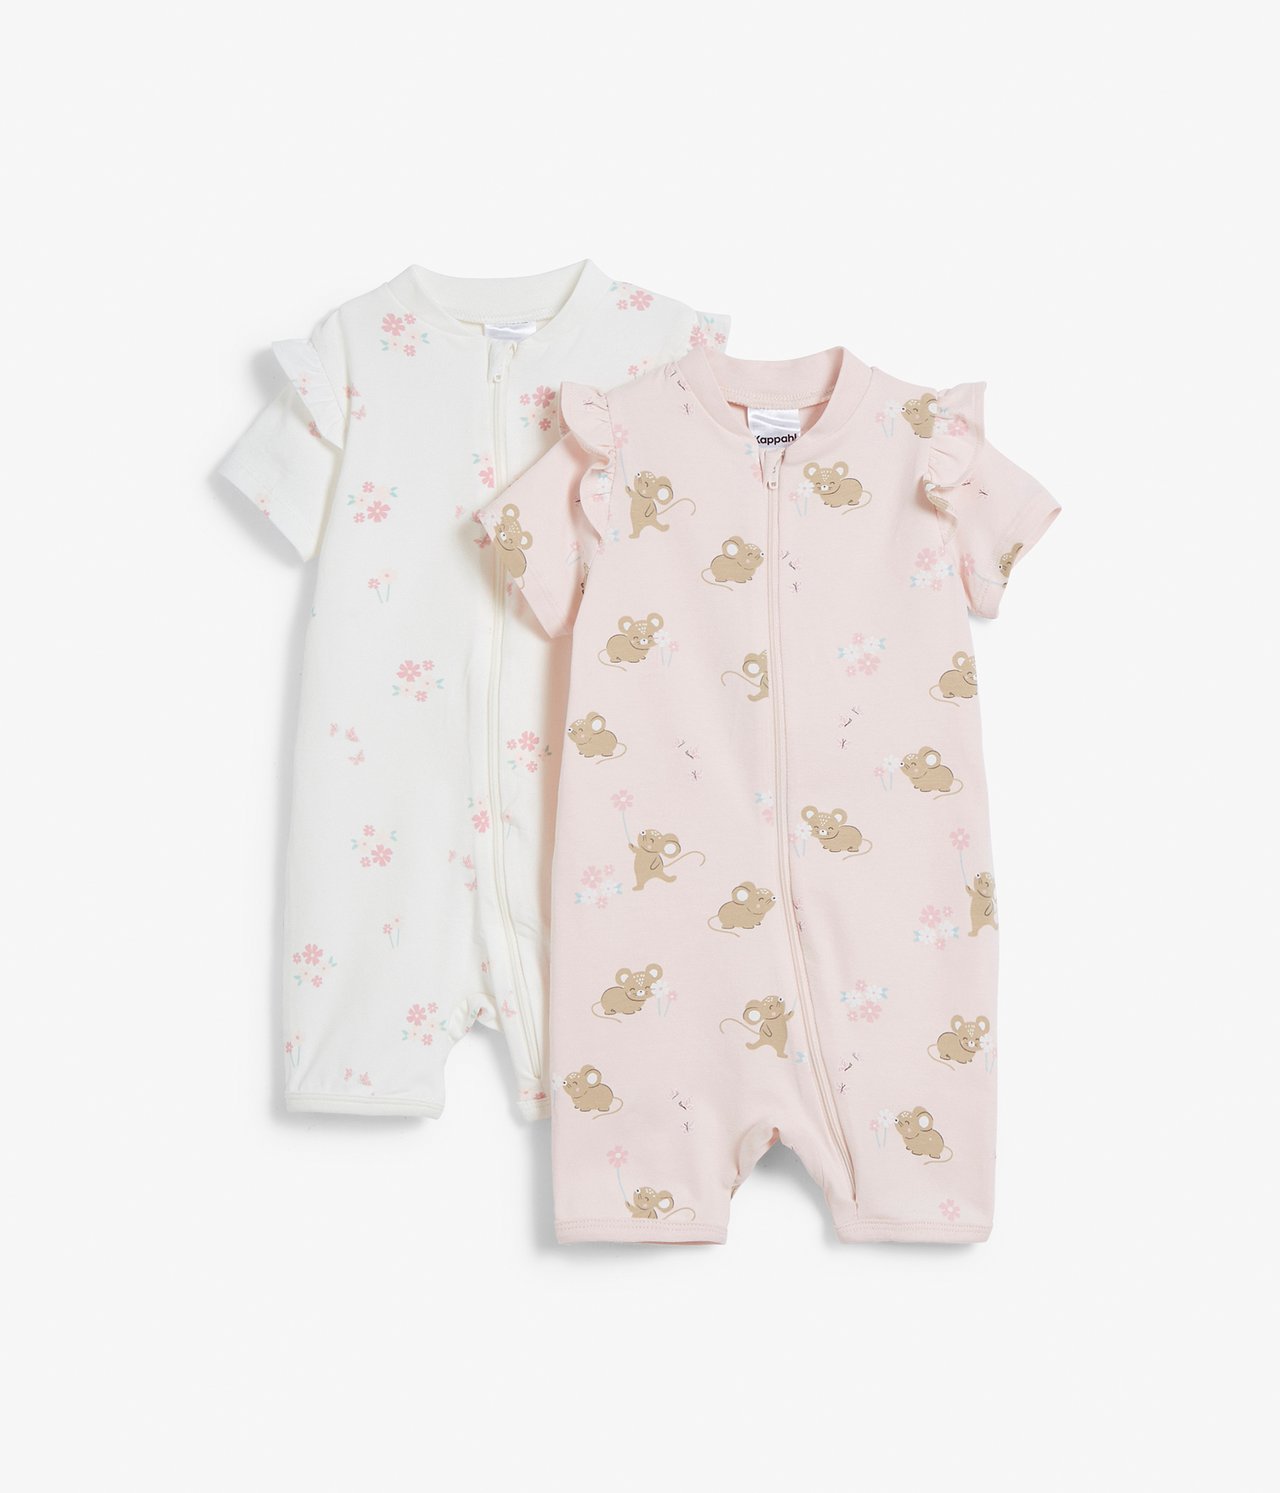 2 kpl:n pakkaus vauvojen pyjamoita - Pinkki - 5